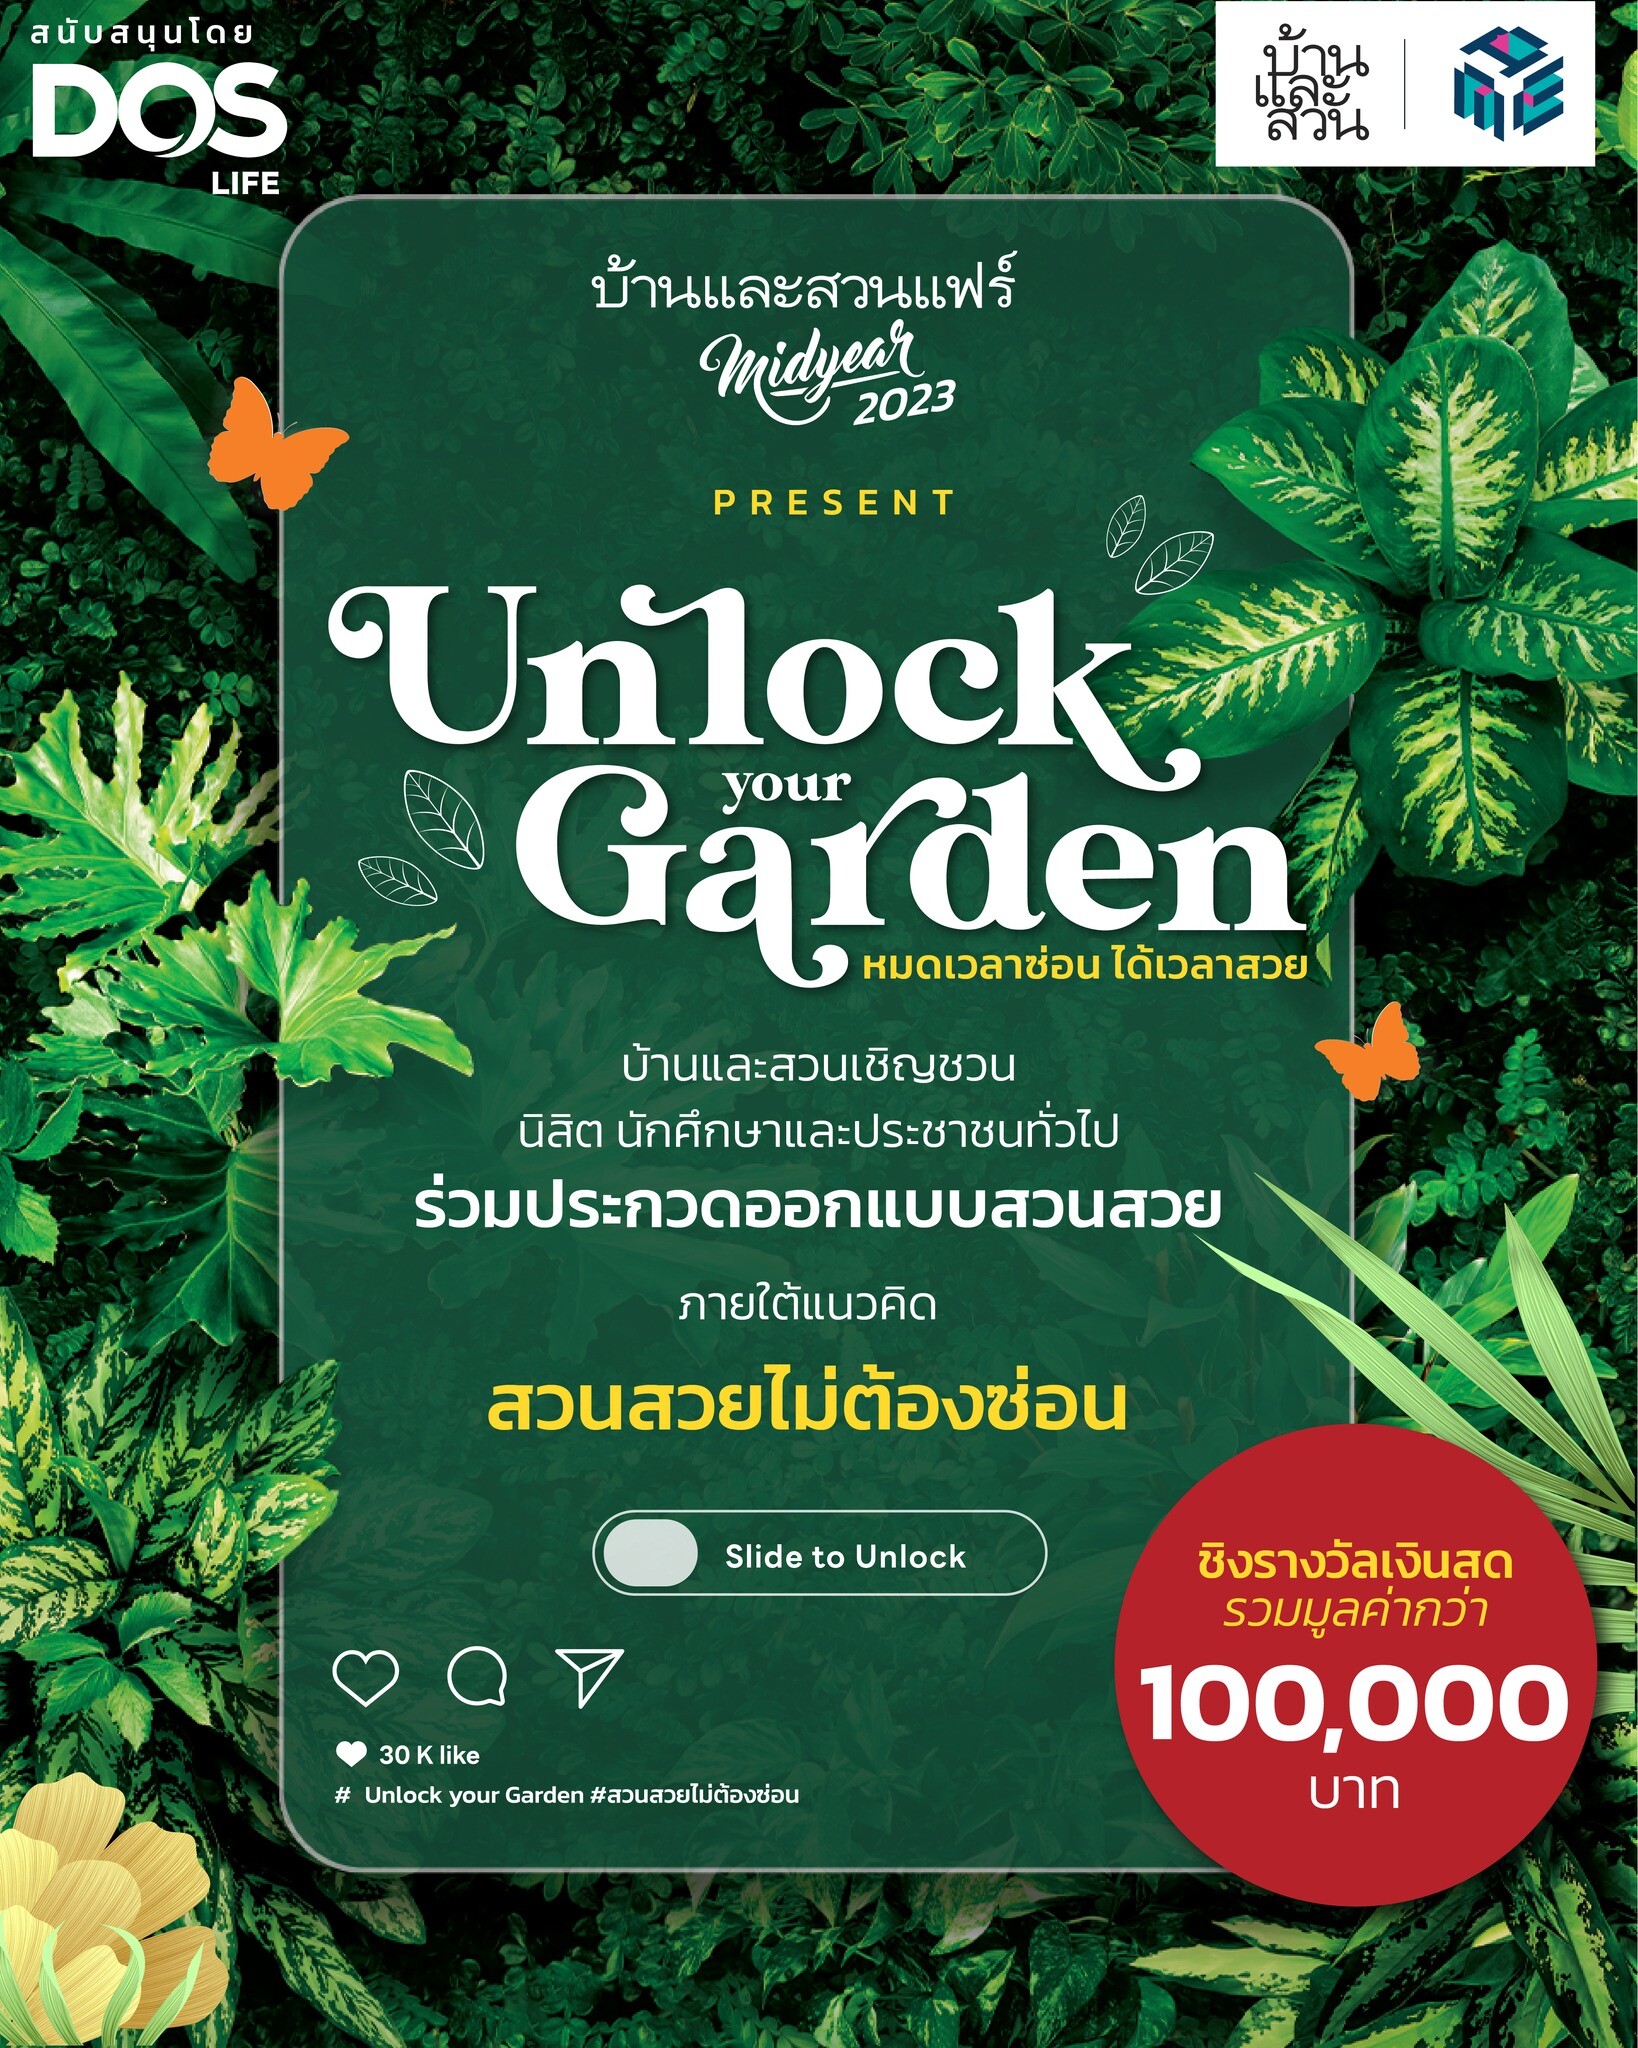 บ้านและสวน เชิญชวนร่วมประกวดออกแบบสวน ภายใต้แนวคิด "Unlock Your Garden สวนสวยไม่ต้องซ่อน"